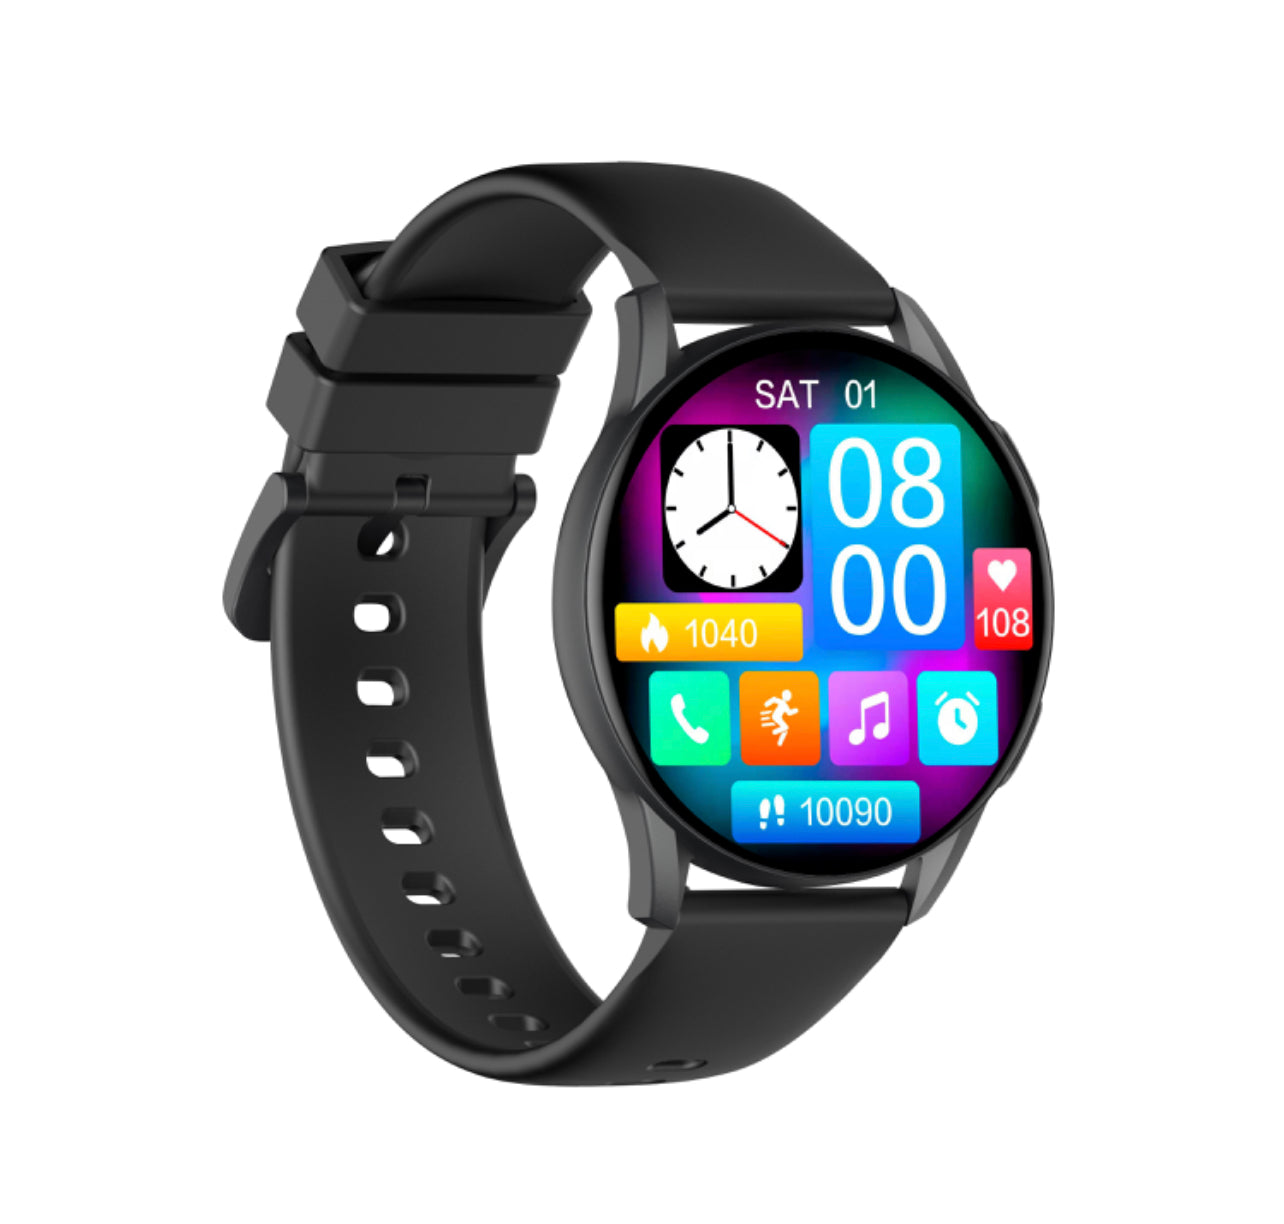 Kieslect Smart Watch K11 Ultra Amoled 1.39Always-on Full-screen